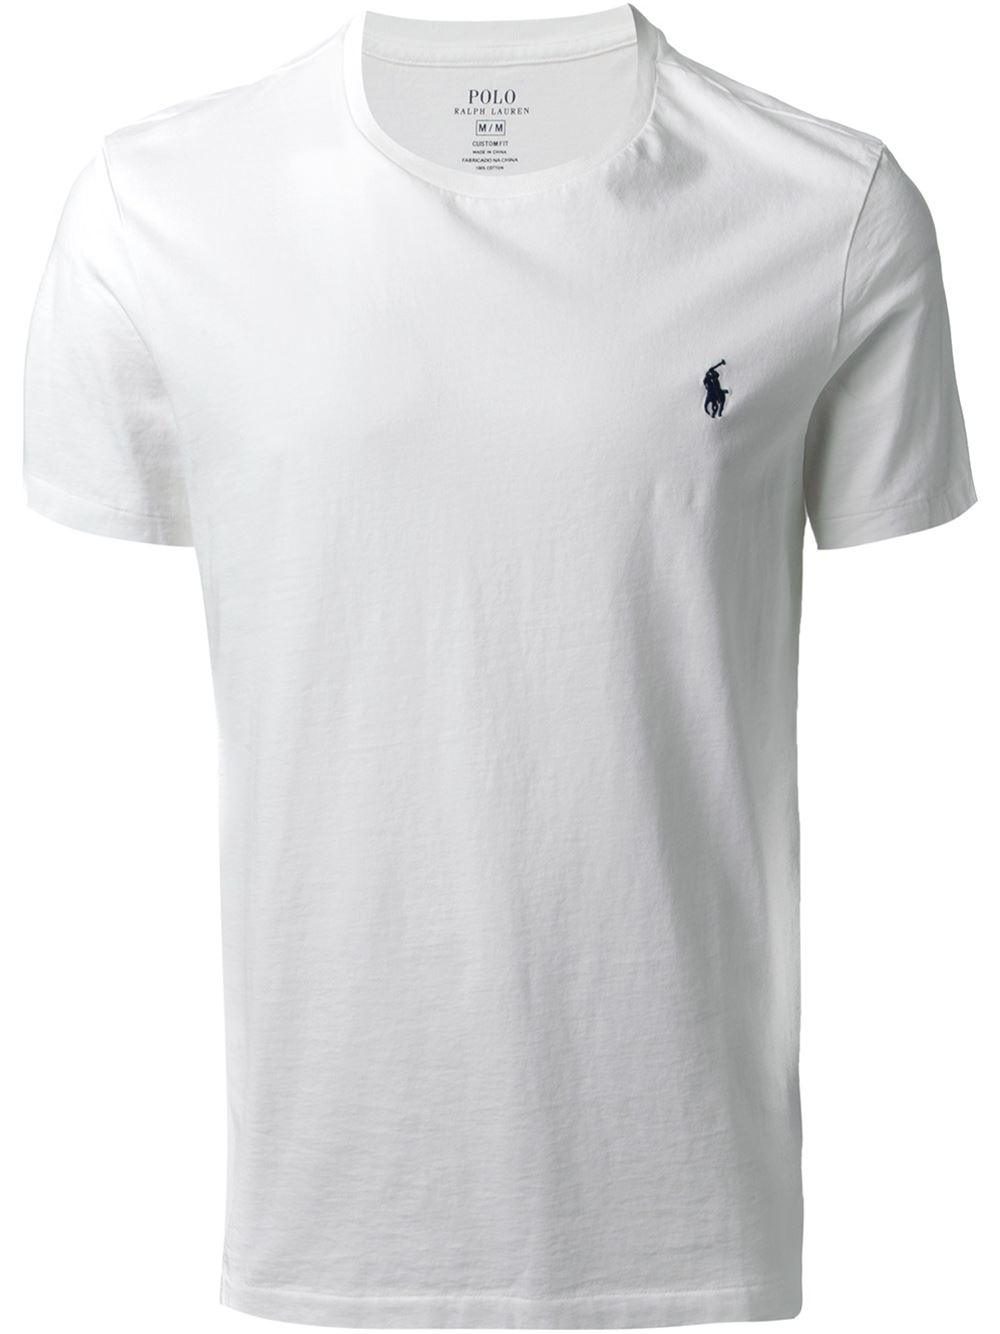  Polo  Ralph Lauren Crew Neck T  Shirt  in White  for Men Lyst